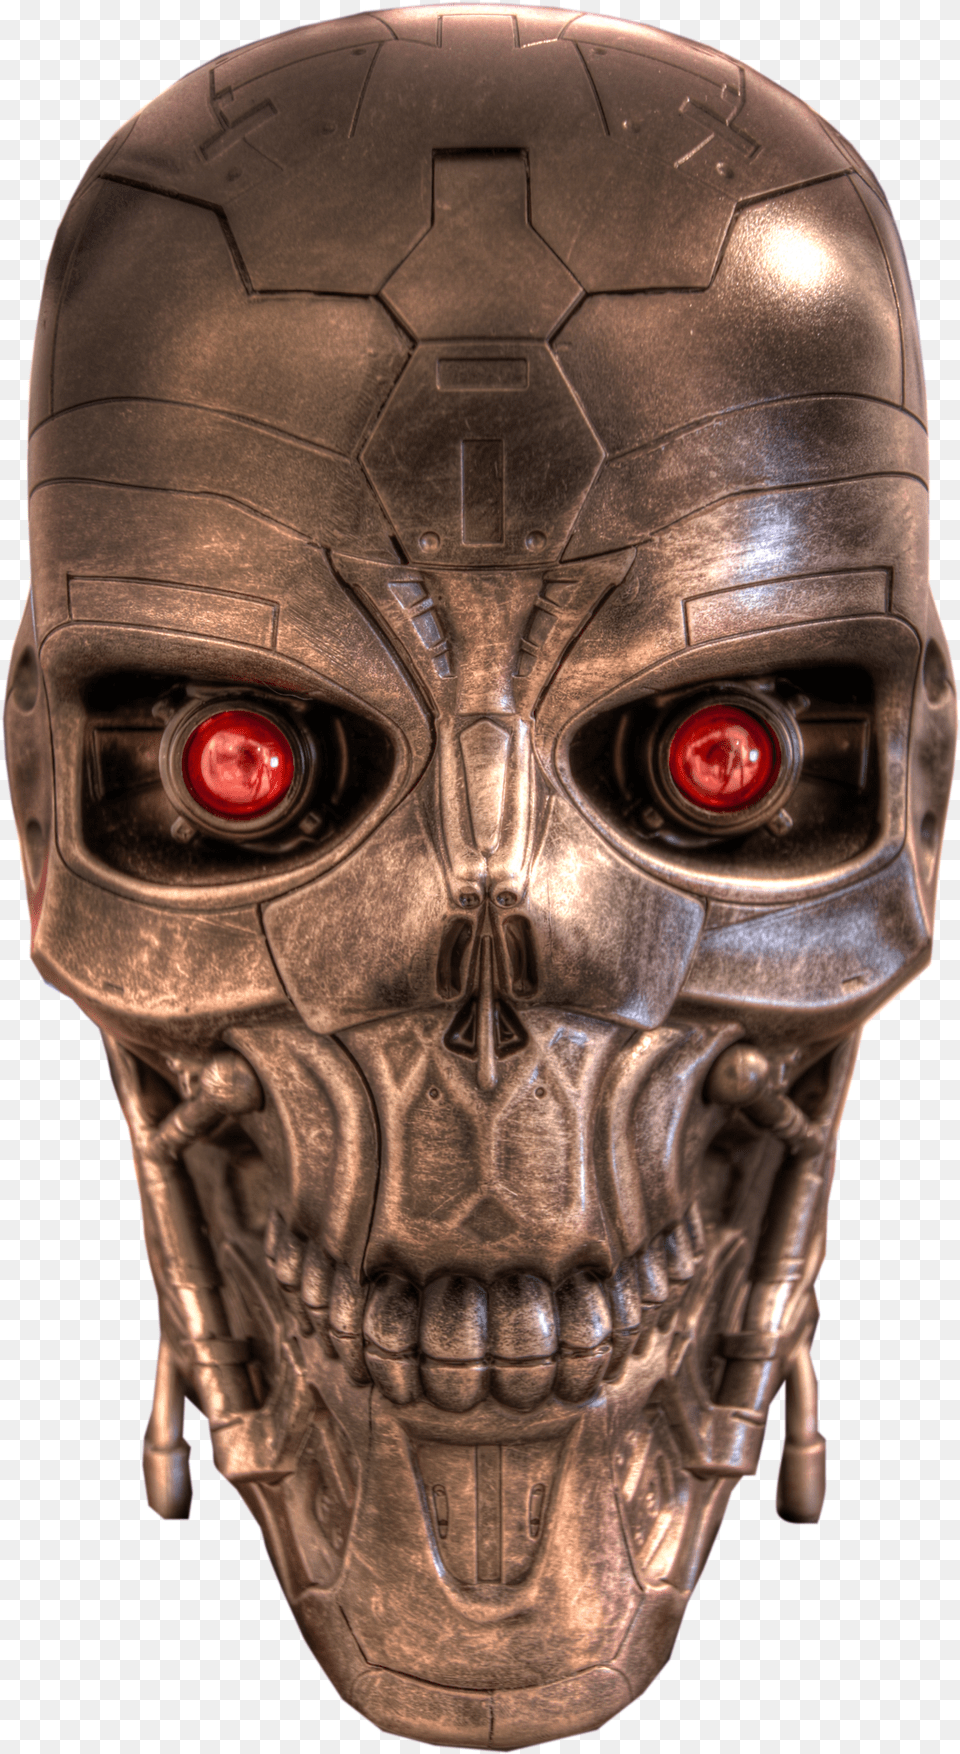 Download Terminator Skull Image For Robot Head Bg, Helmet, Alien, Mask Free Png